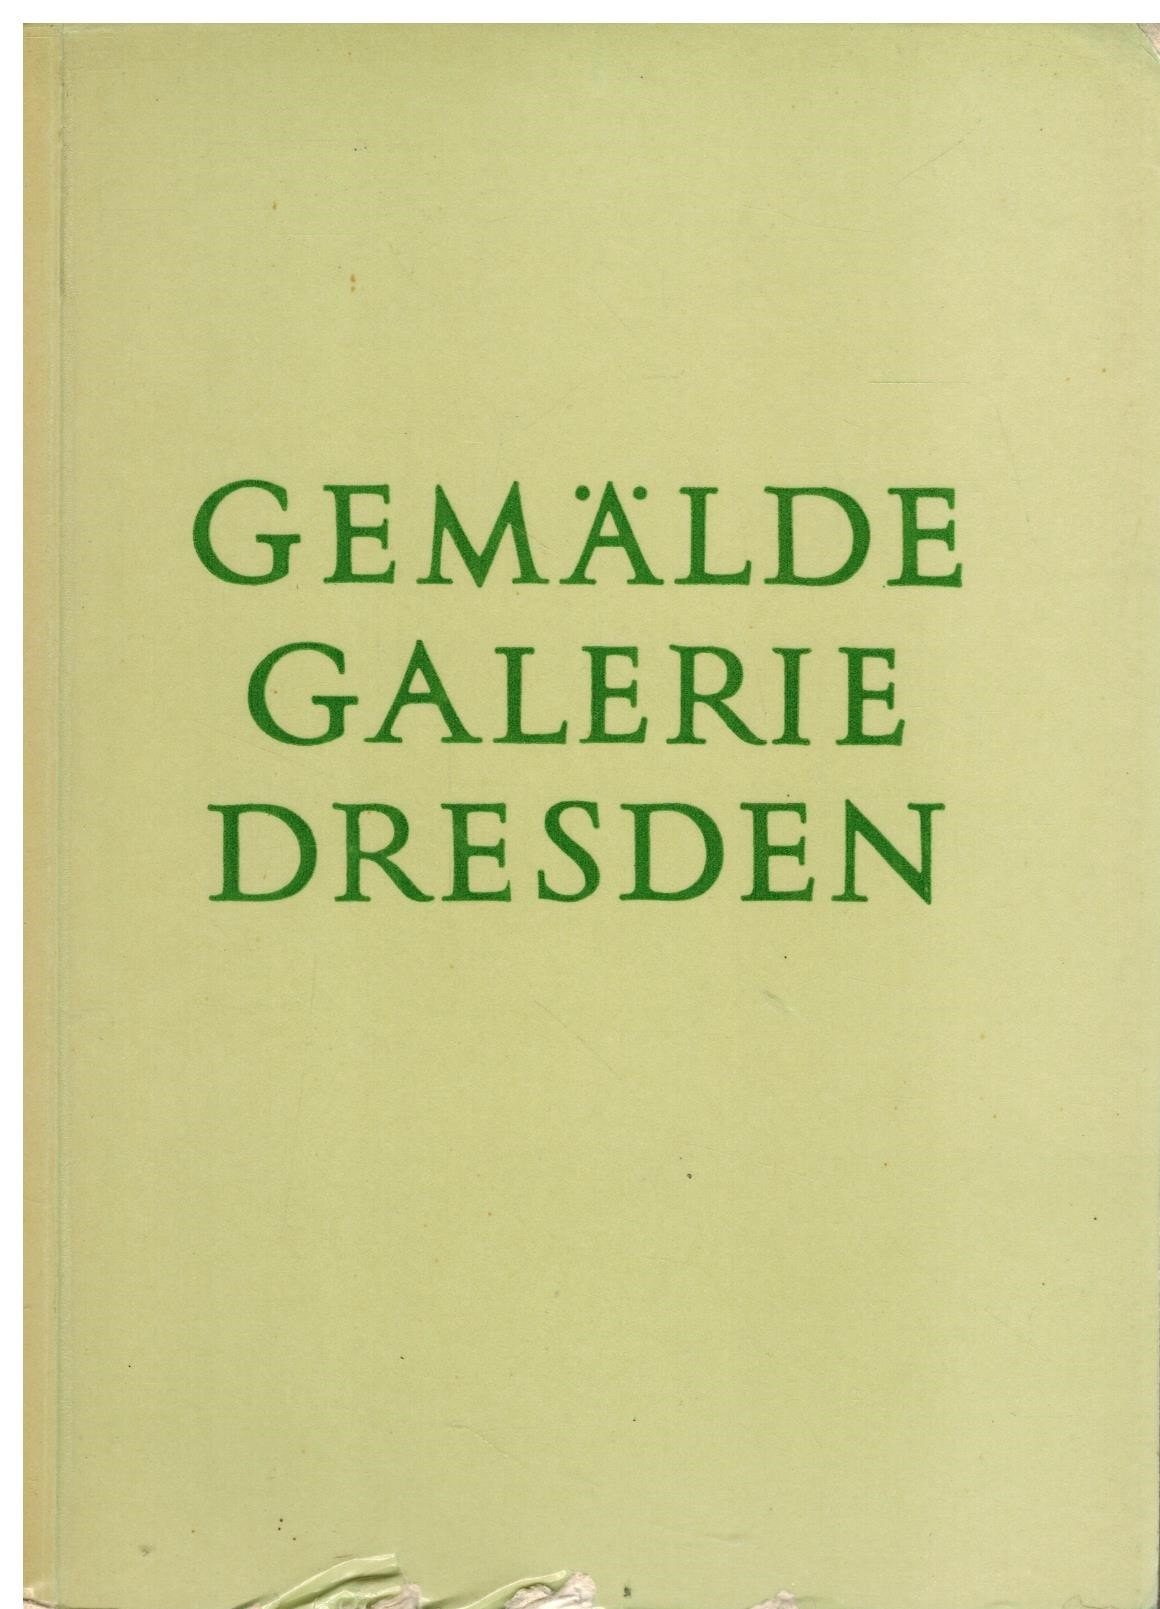 GEMALDE GALERIE DRESDEN